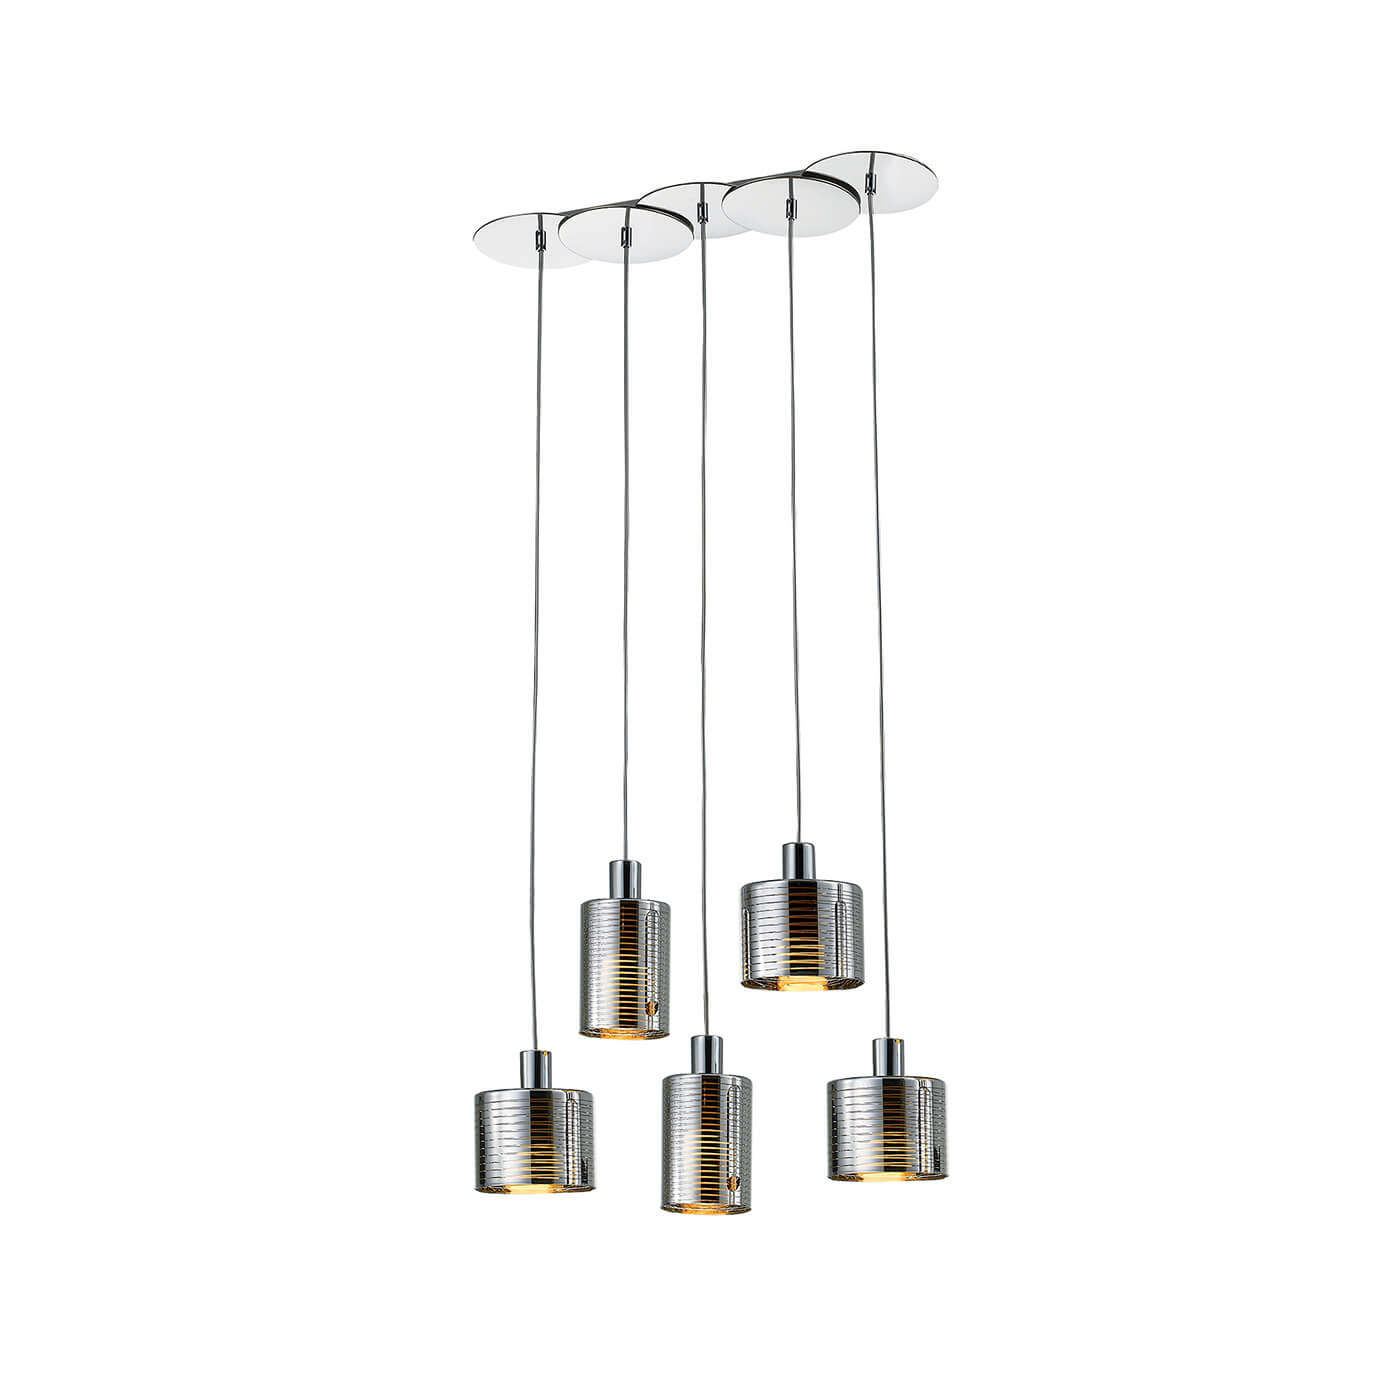 Cauti o lampa suspendata argintie CHARLOTTE S5 din metal, design modern, elegant, pentru living, dining sau dormitor din colectia de lustre si candelabre Domicilio?